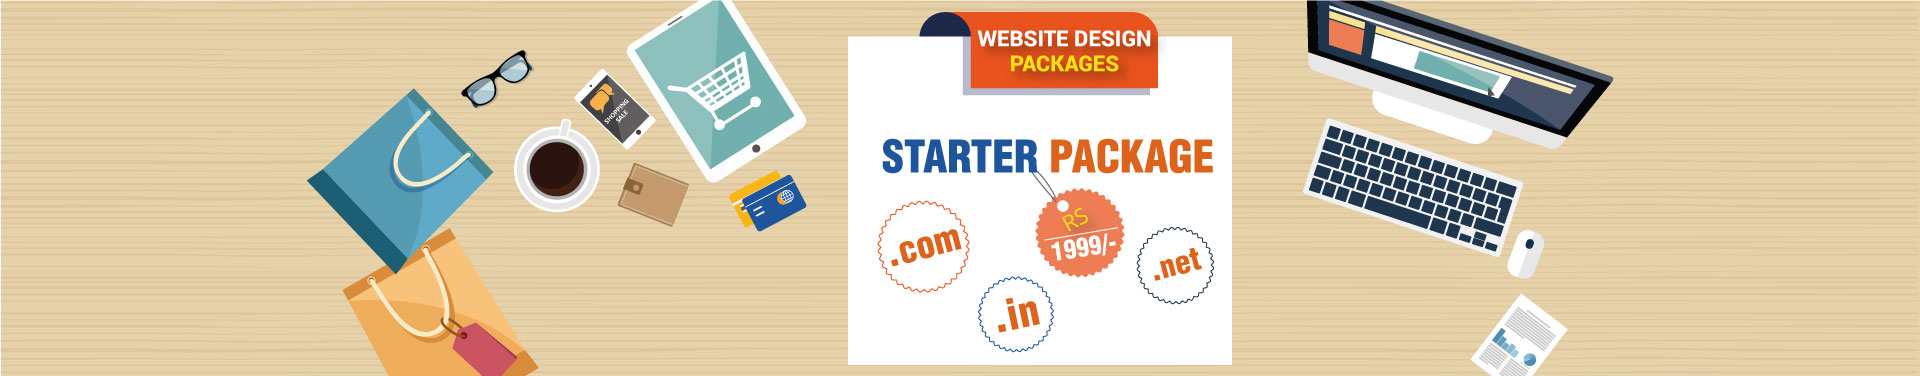 Website Design Packages